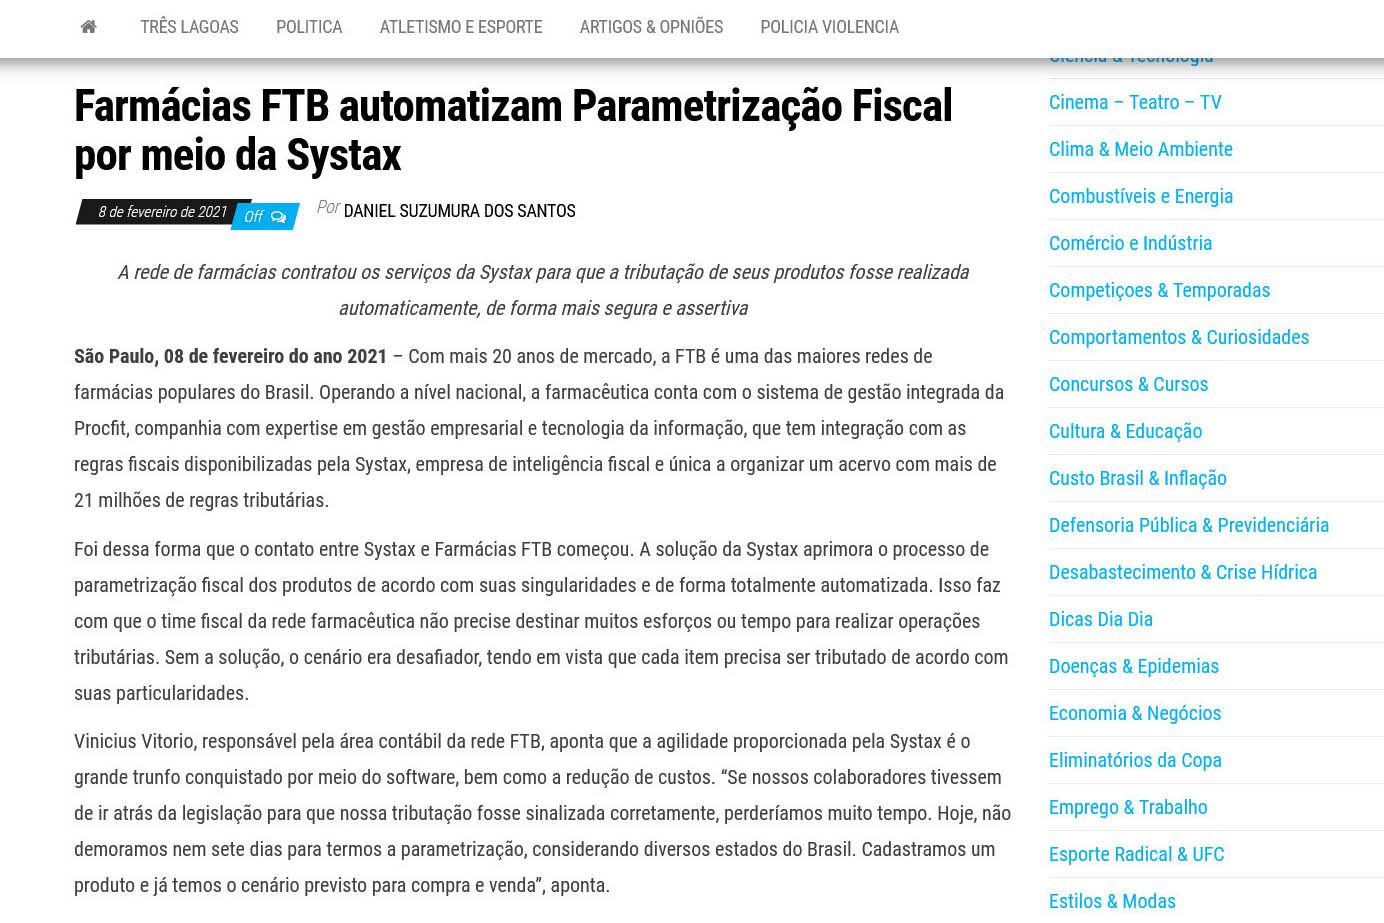 Farmácias FTB automatizam Parametrização Fiscal por meio da Systax